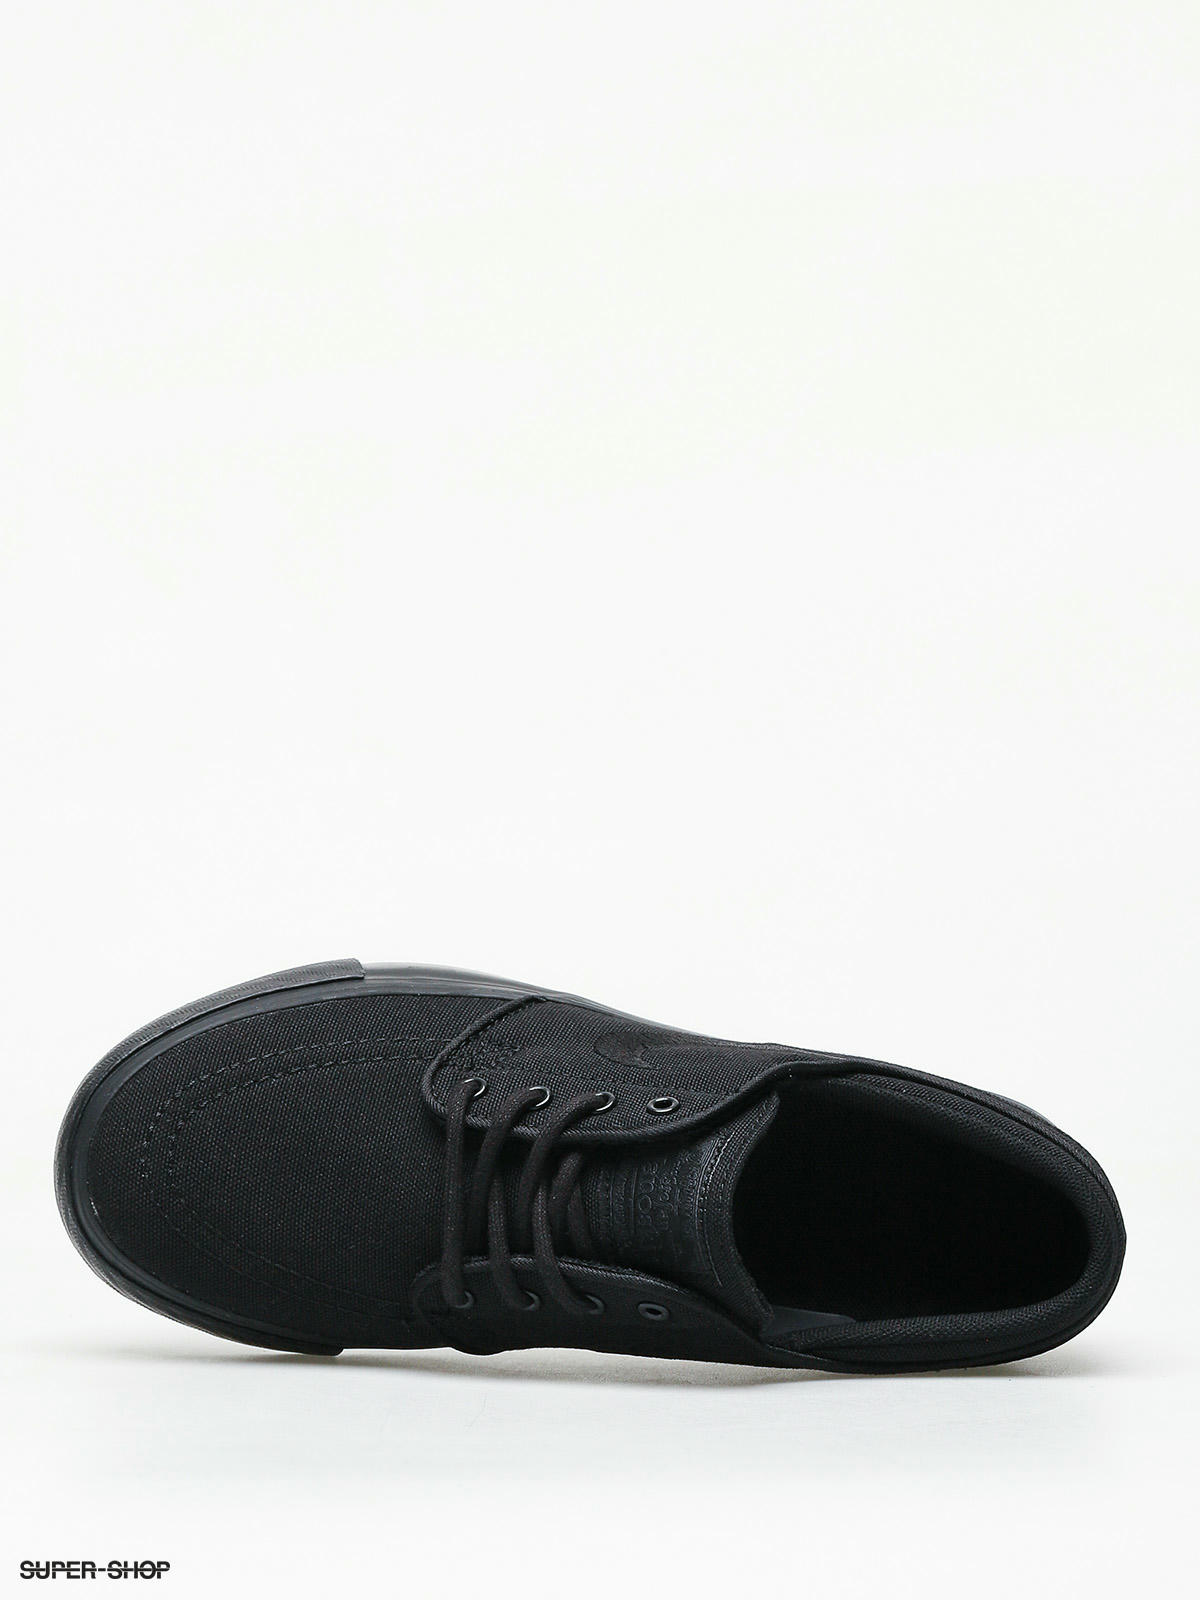 nike sb shoes all black